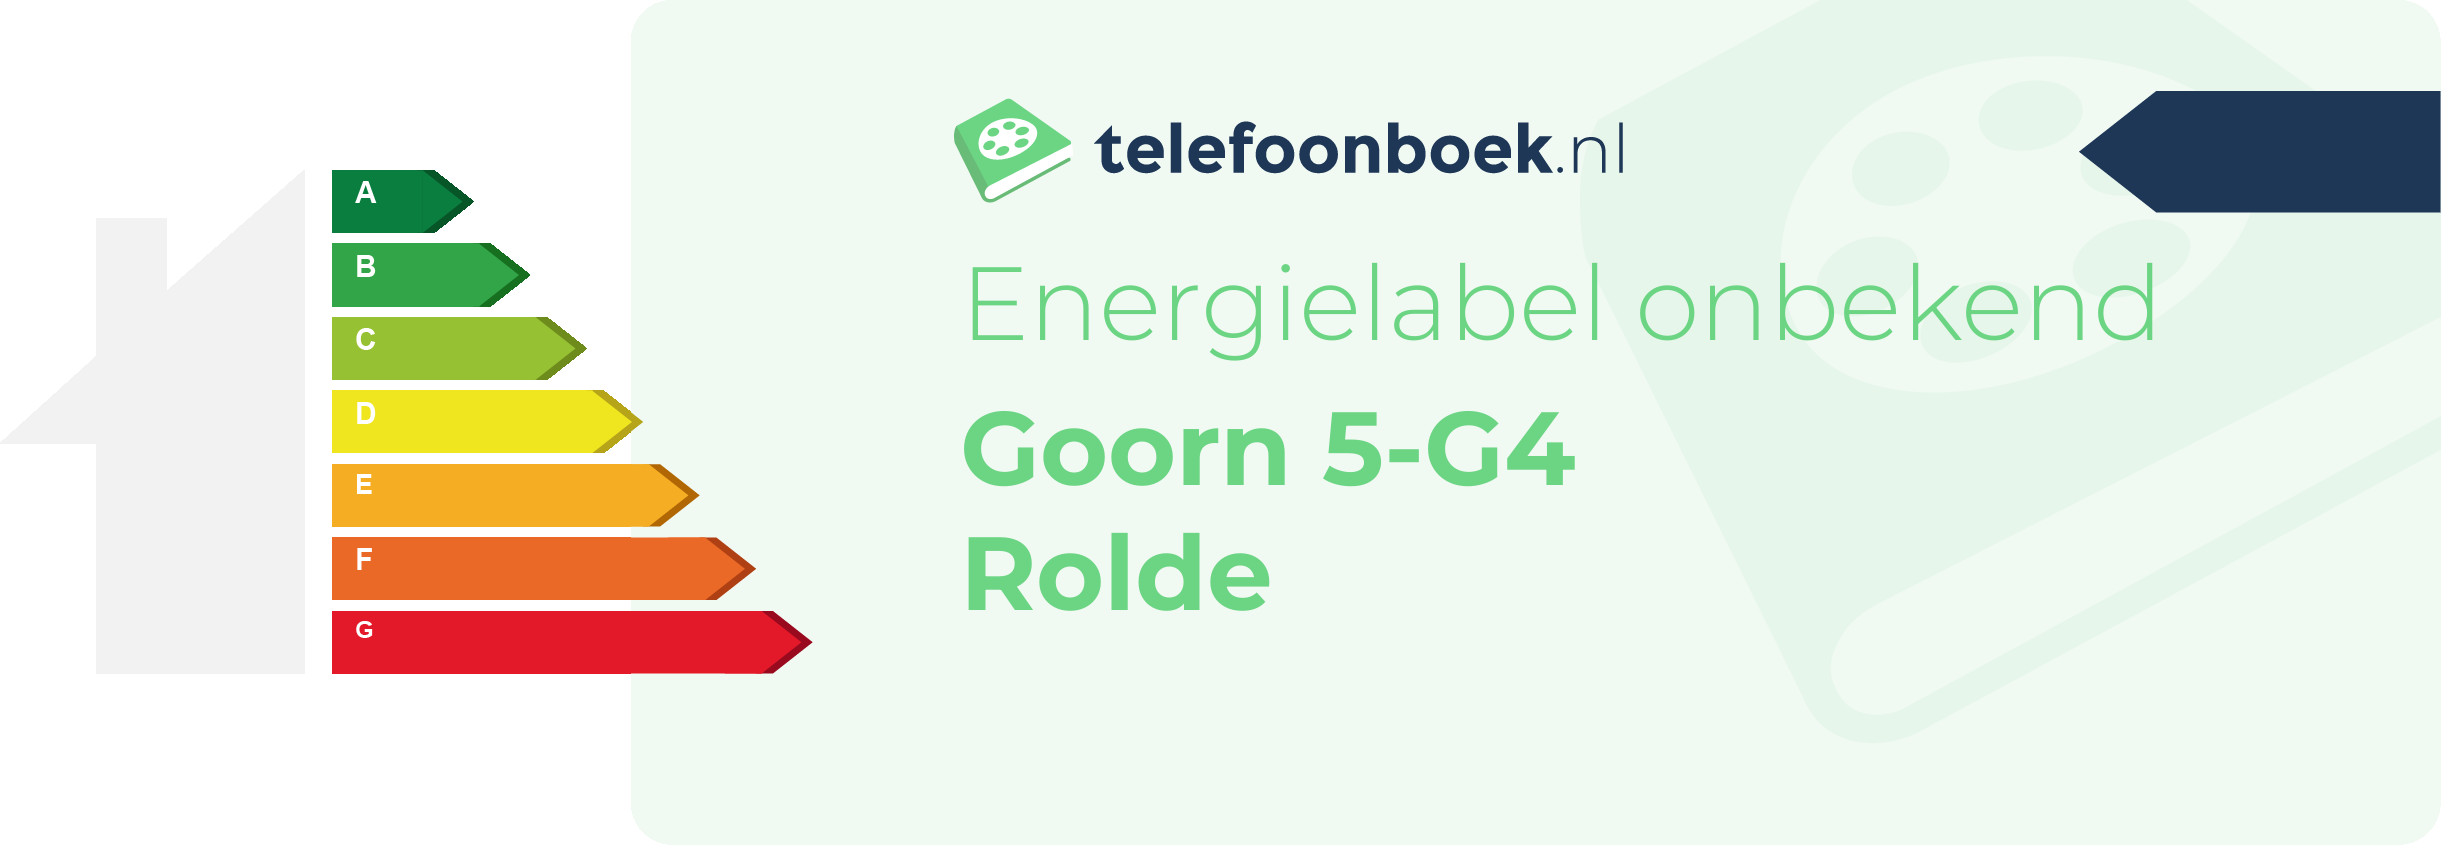 Energielabel Goorn 5-G4 Rolde